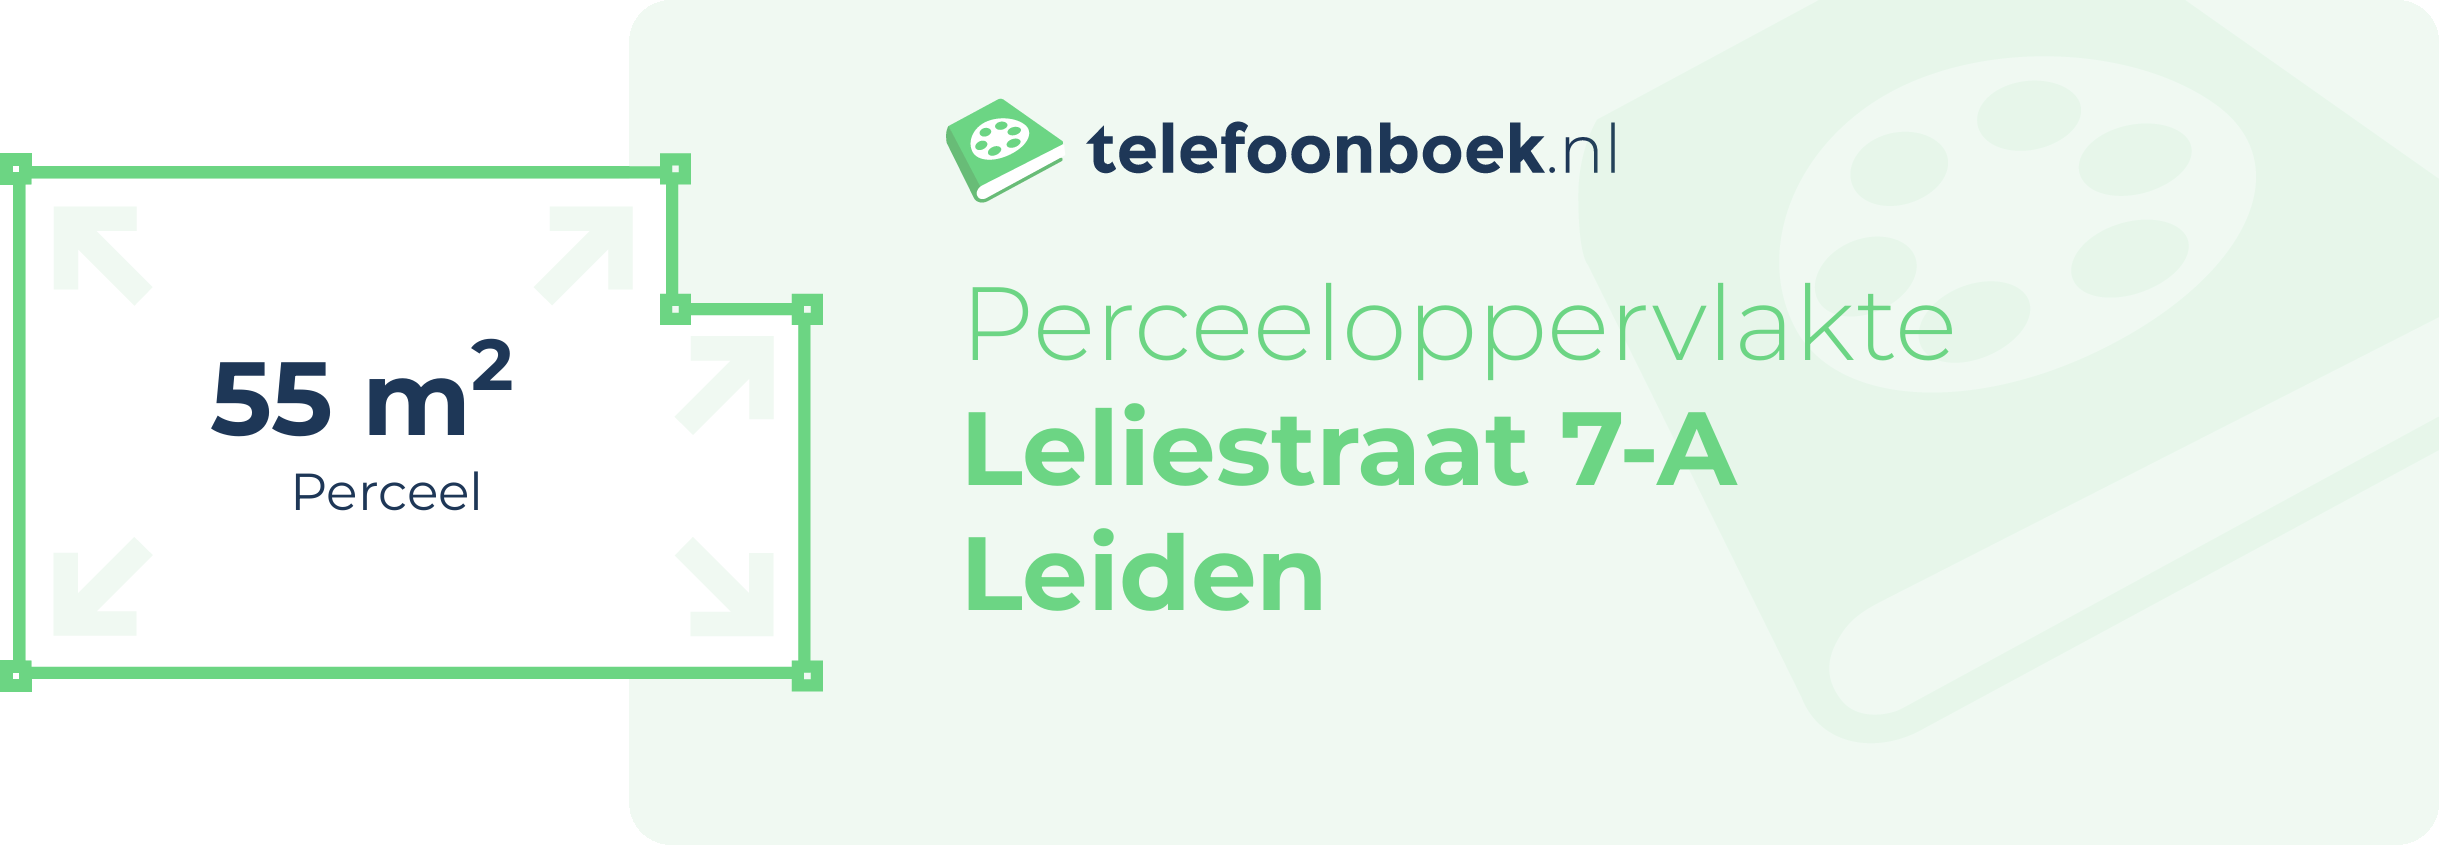 Perceeloppervlakte Leliestraat 7-A Leiden